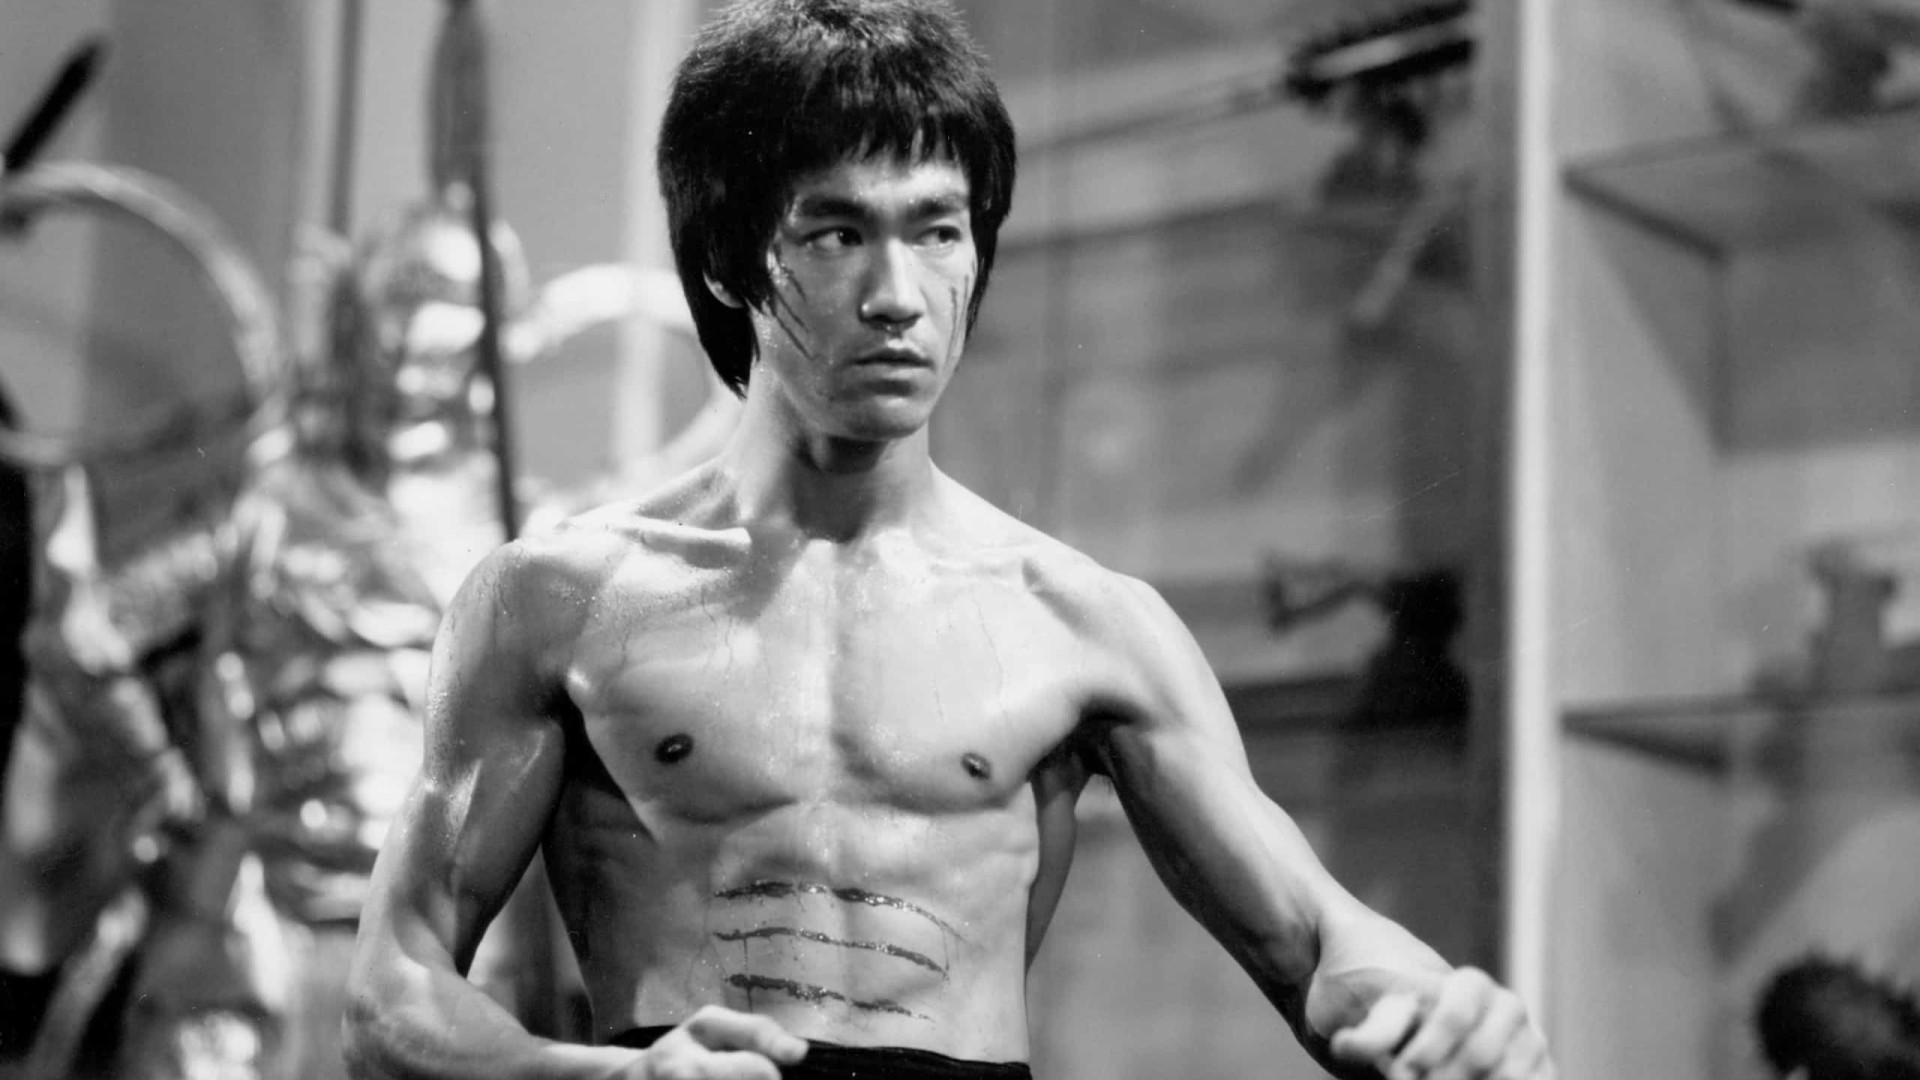 Cartas confirmam que Bruce Lee era viciado em drogas